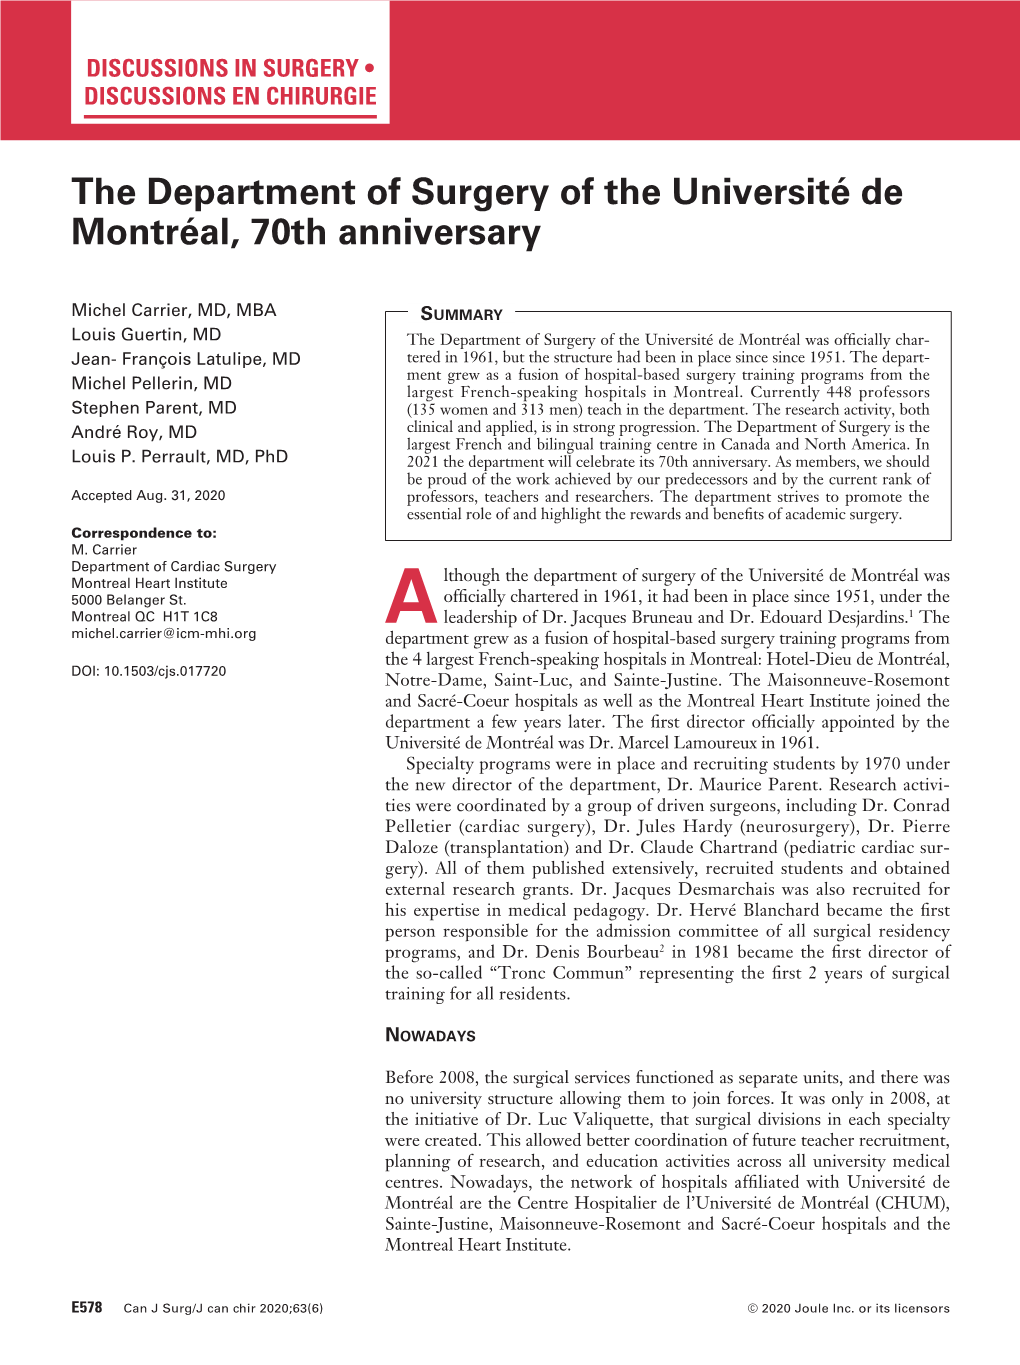 The Department of Surgery of the Université De Montréal, 70Th Anniversary